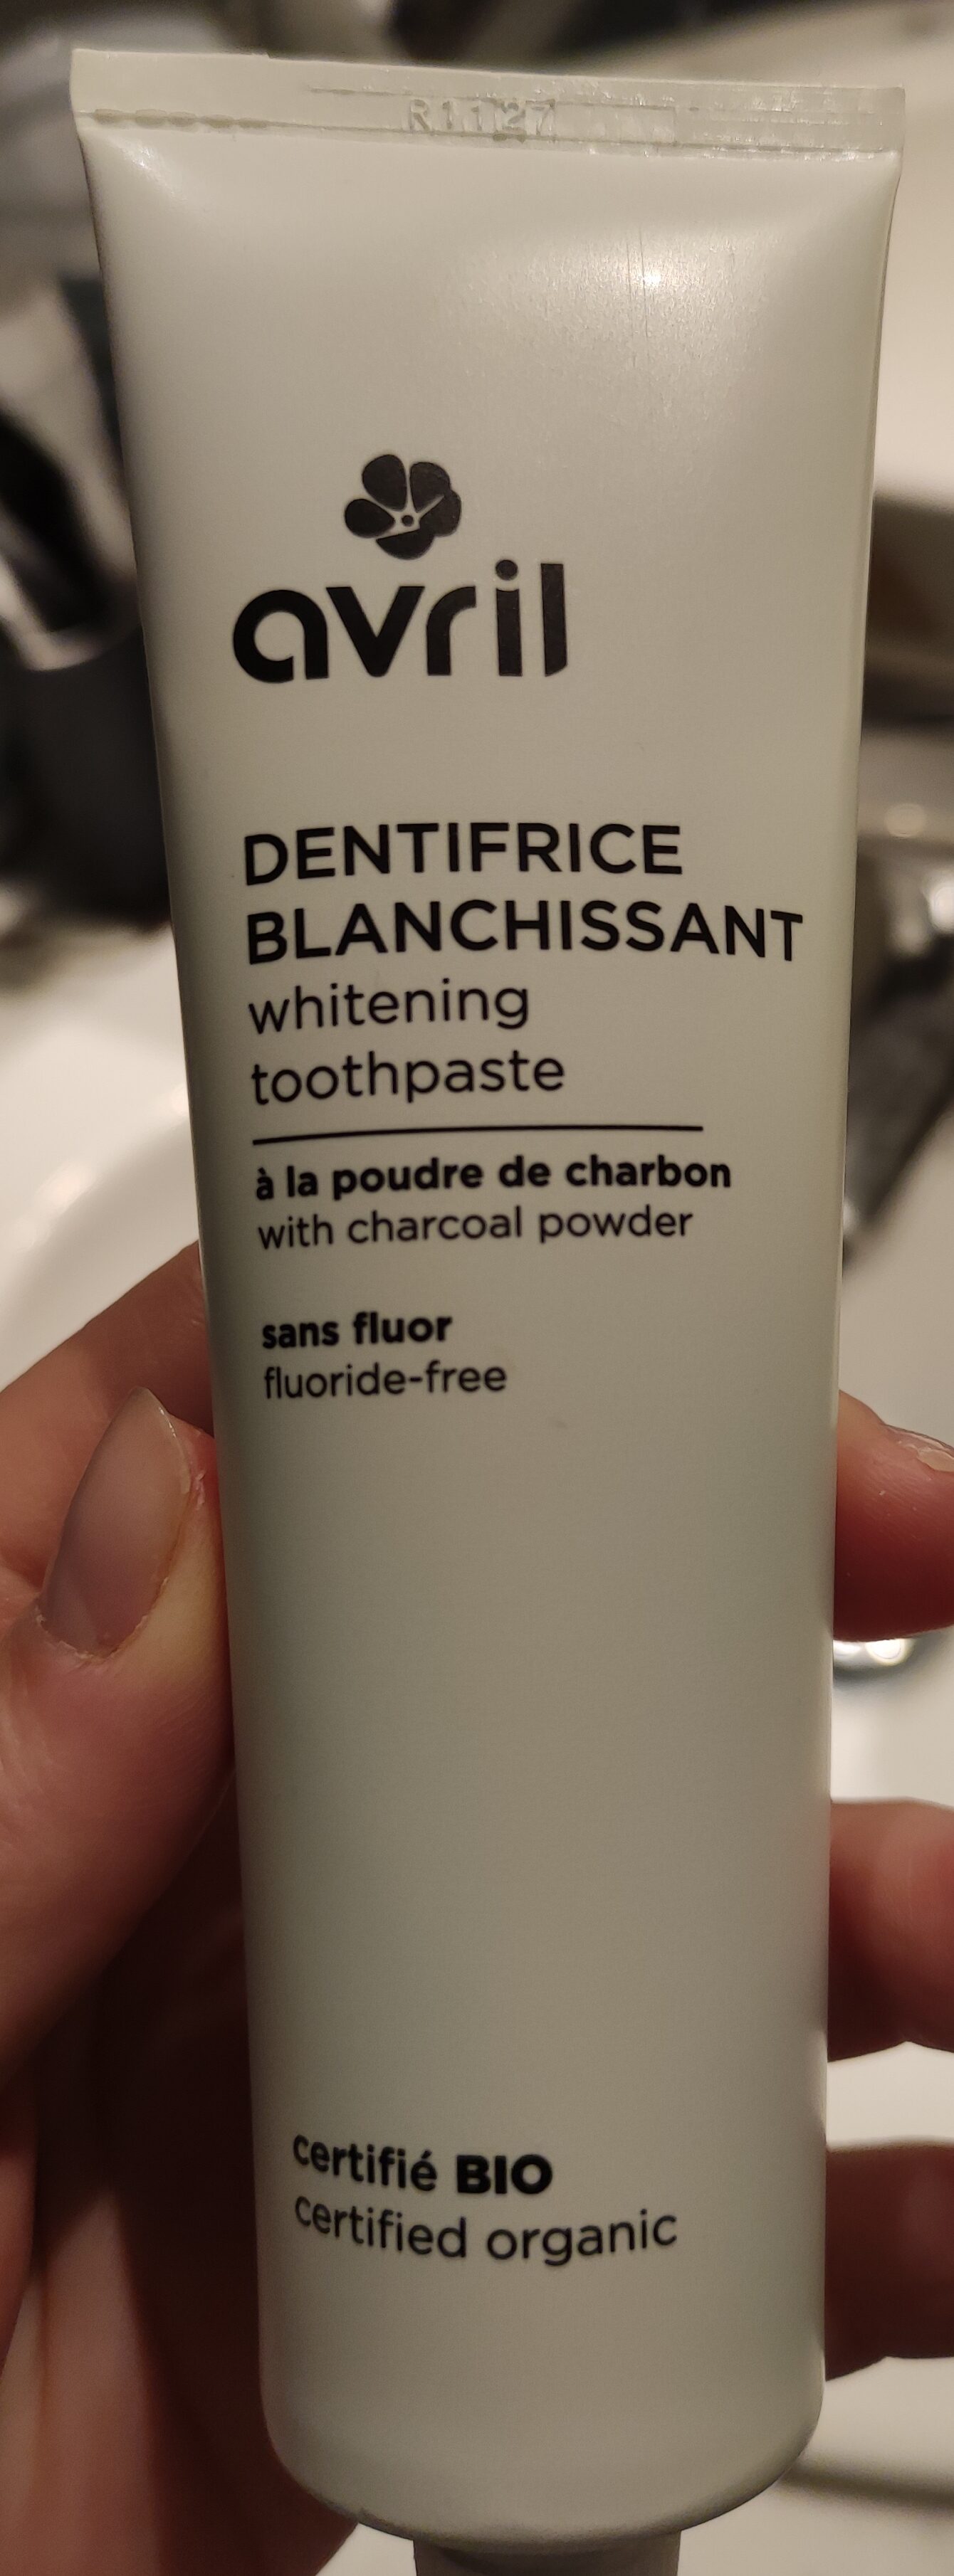 Avril dentifrice blanchissant - Produkt - fr